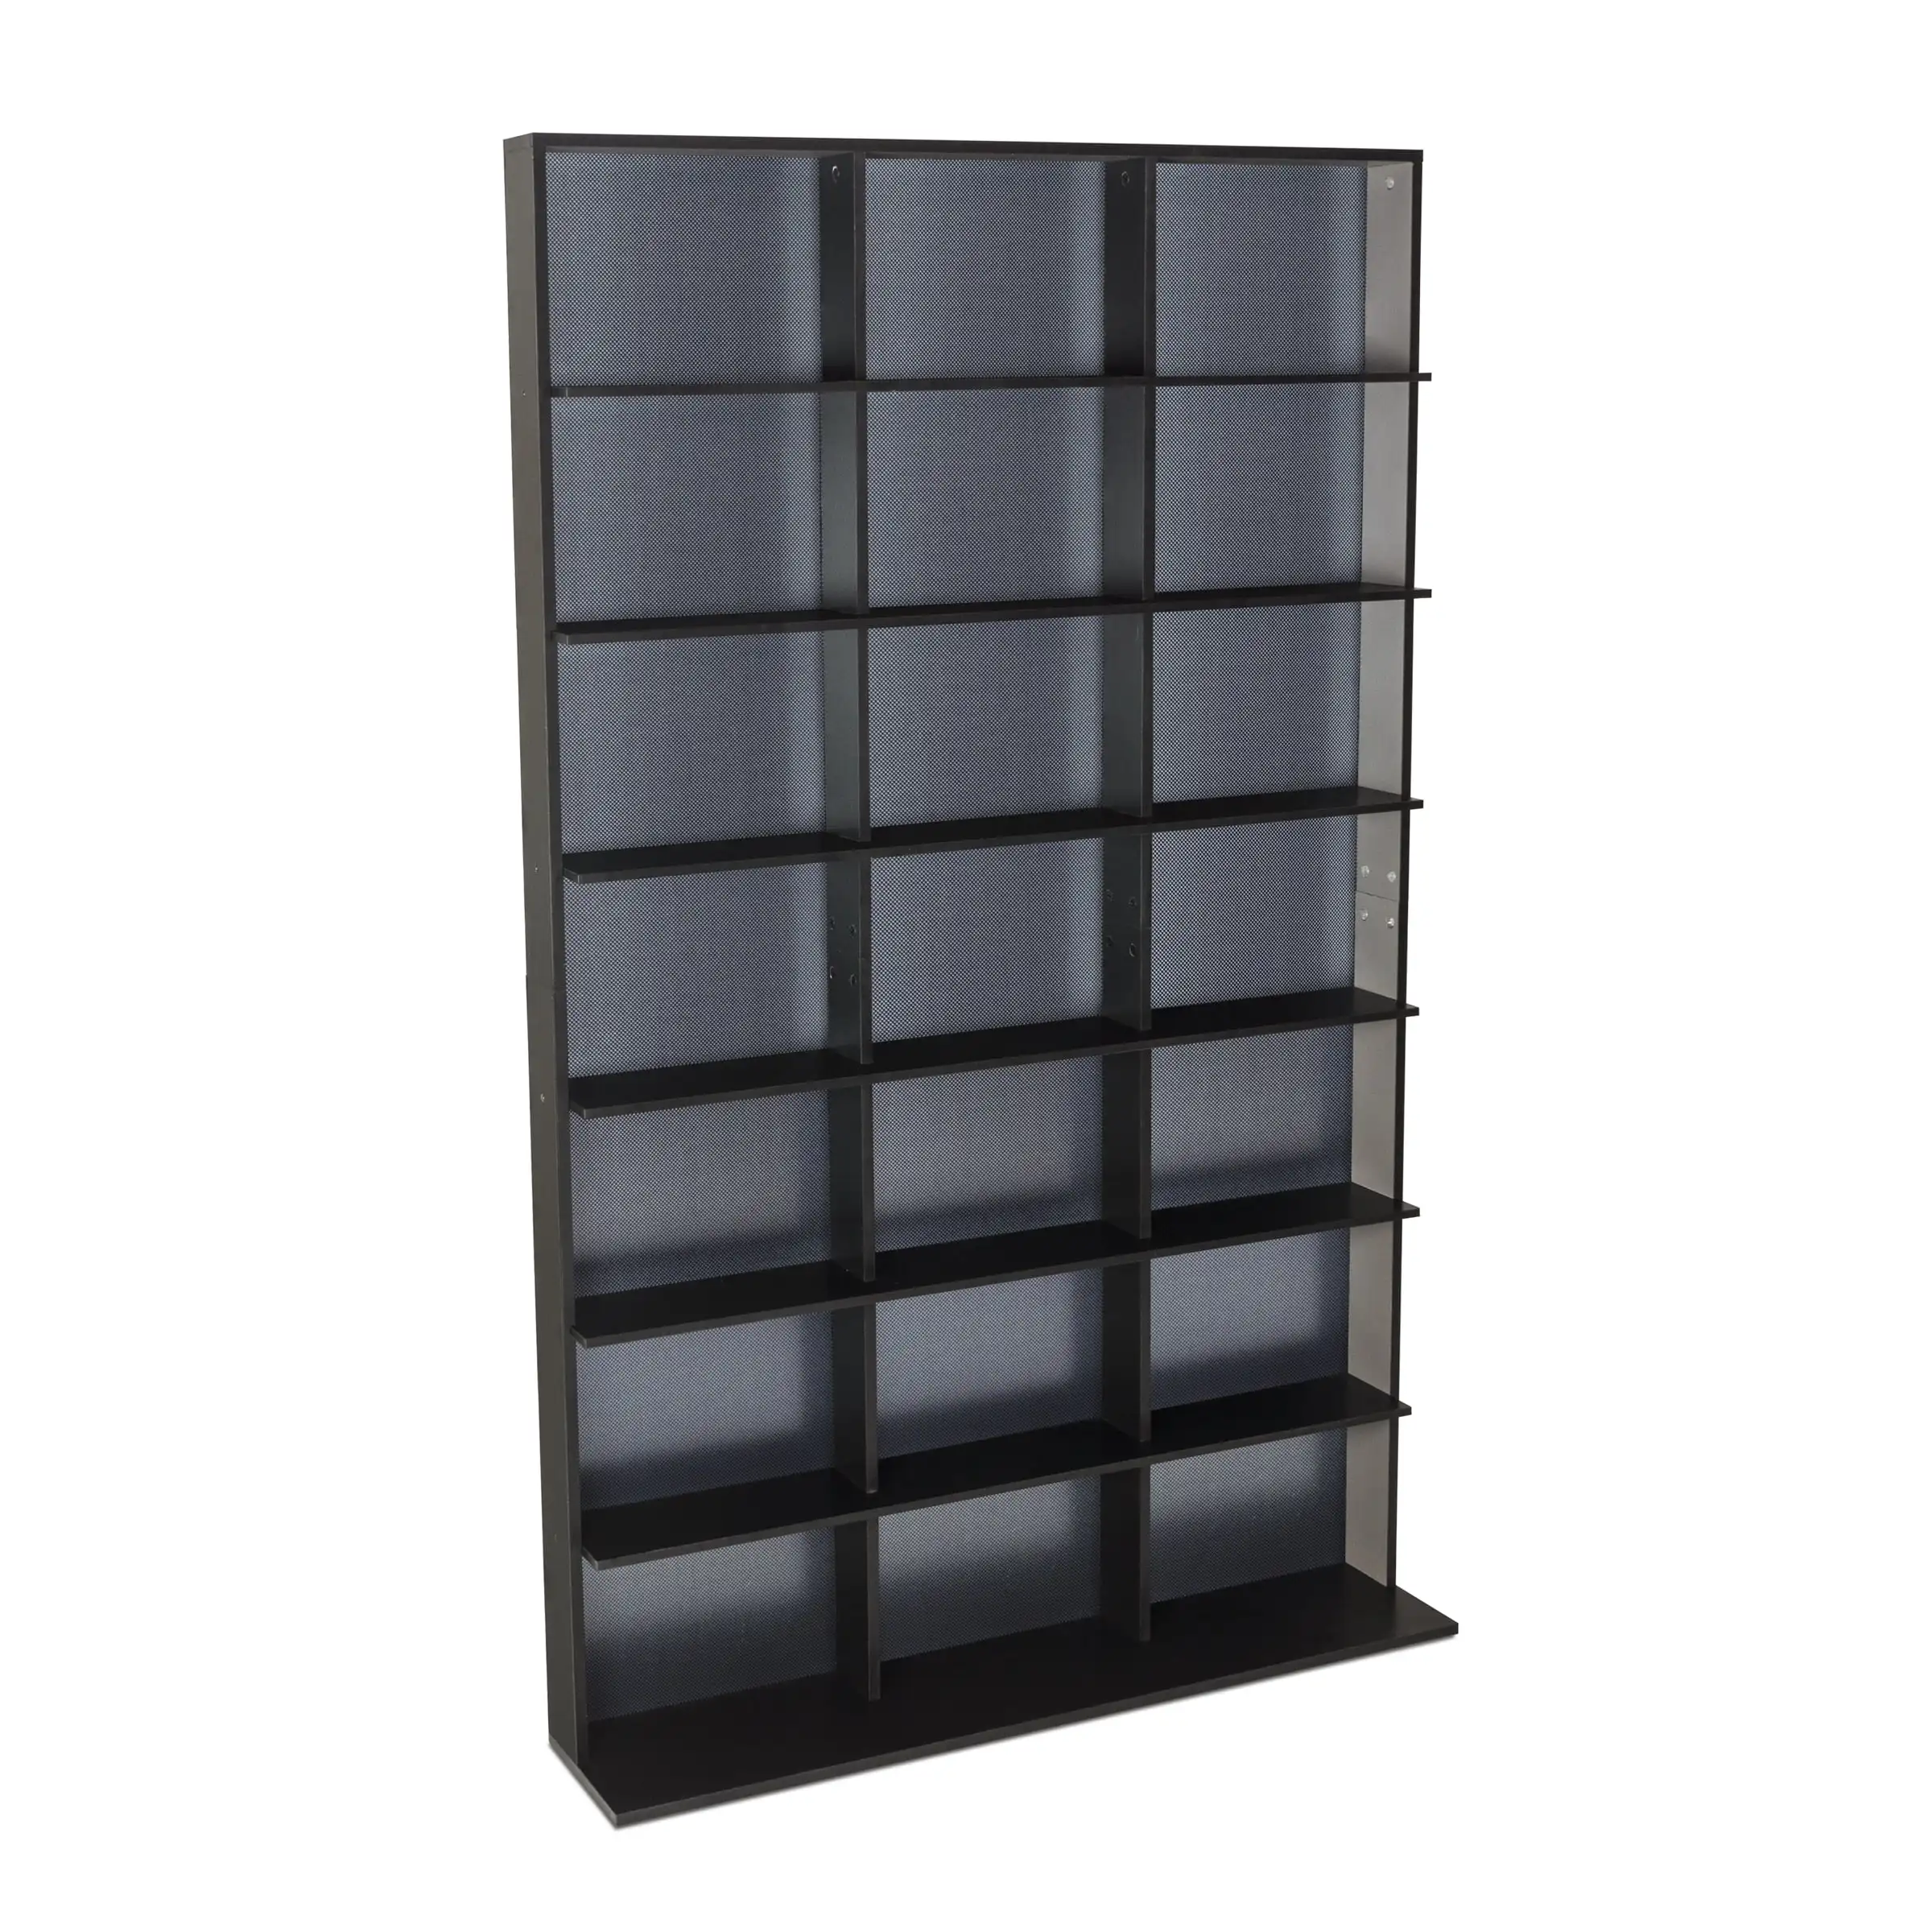 

Элитный Средний деревянный книжный шкаф Atlantic 37x60 дюймов с 7 полками, твердый черный цвет